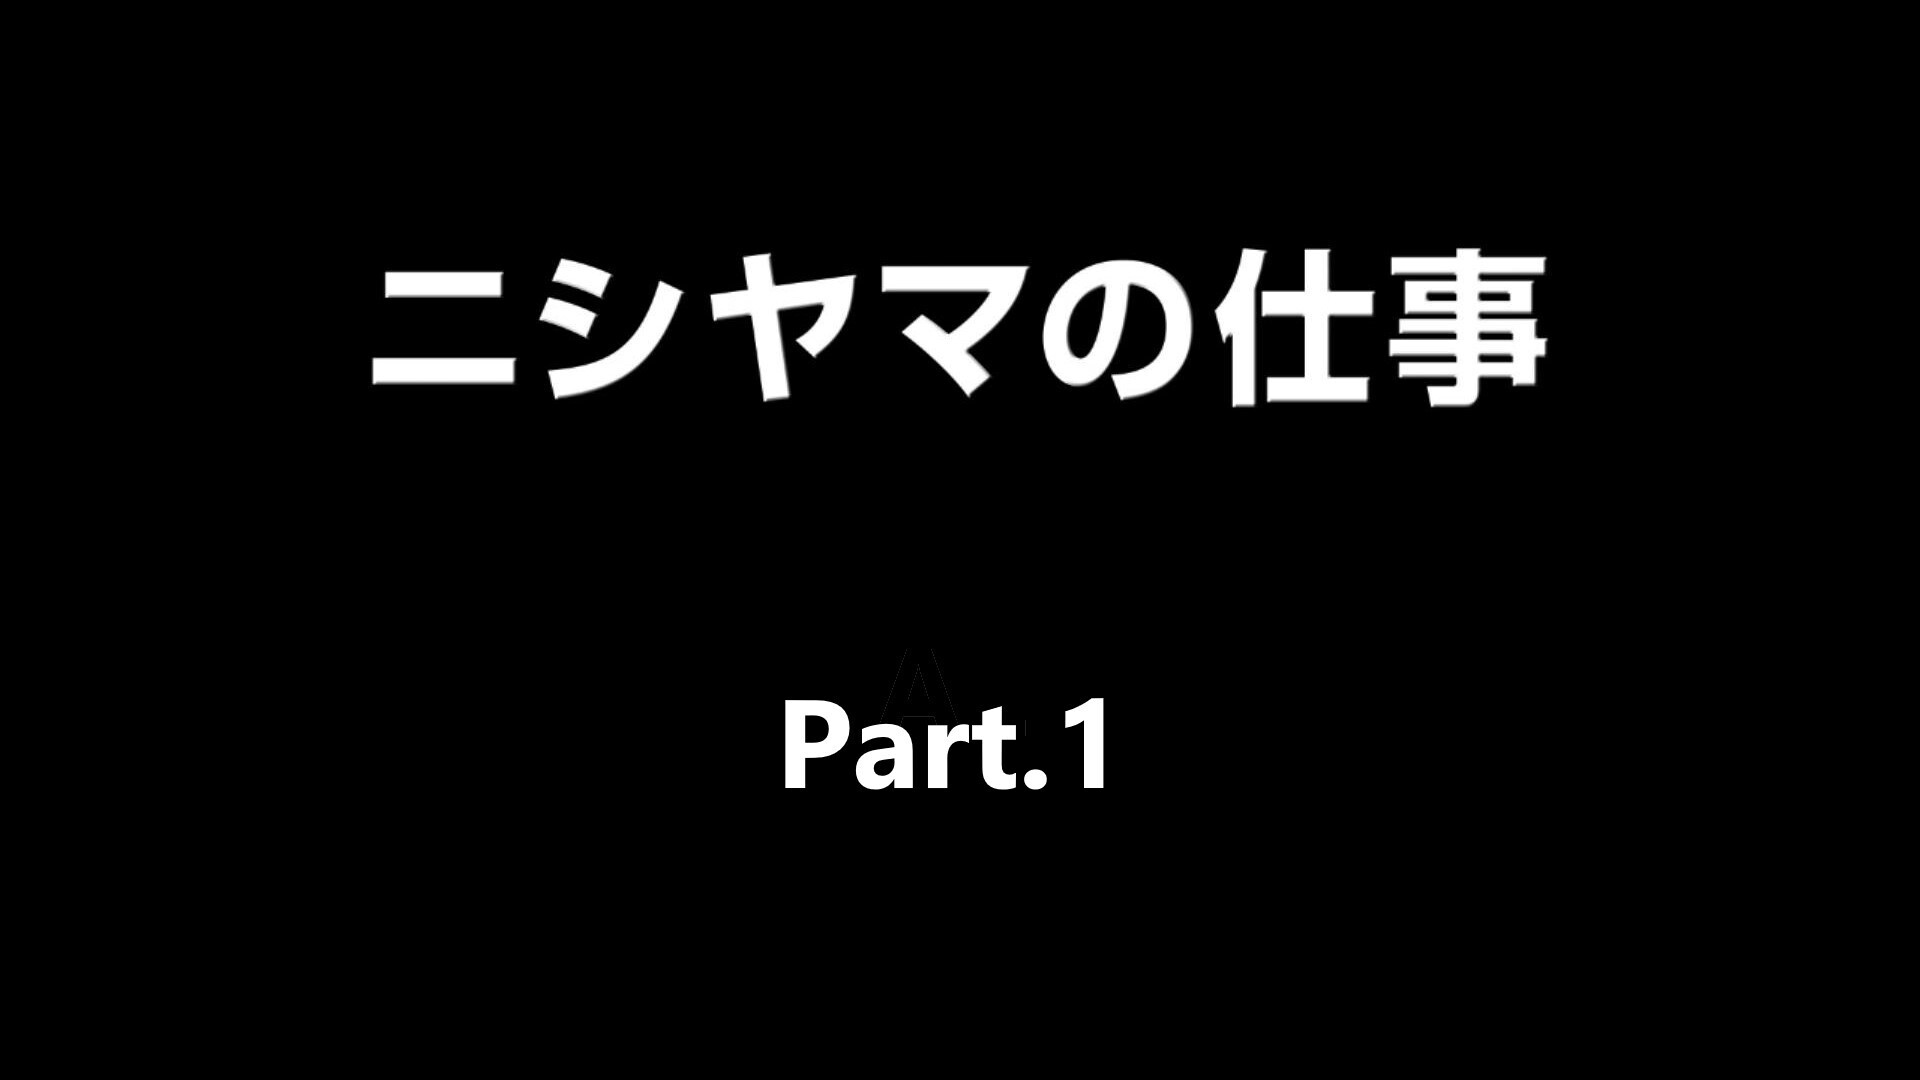 【株式会社ニシヤマ】リクルート映像 Part.1 (9:34)